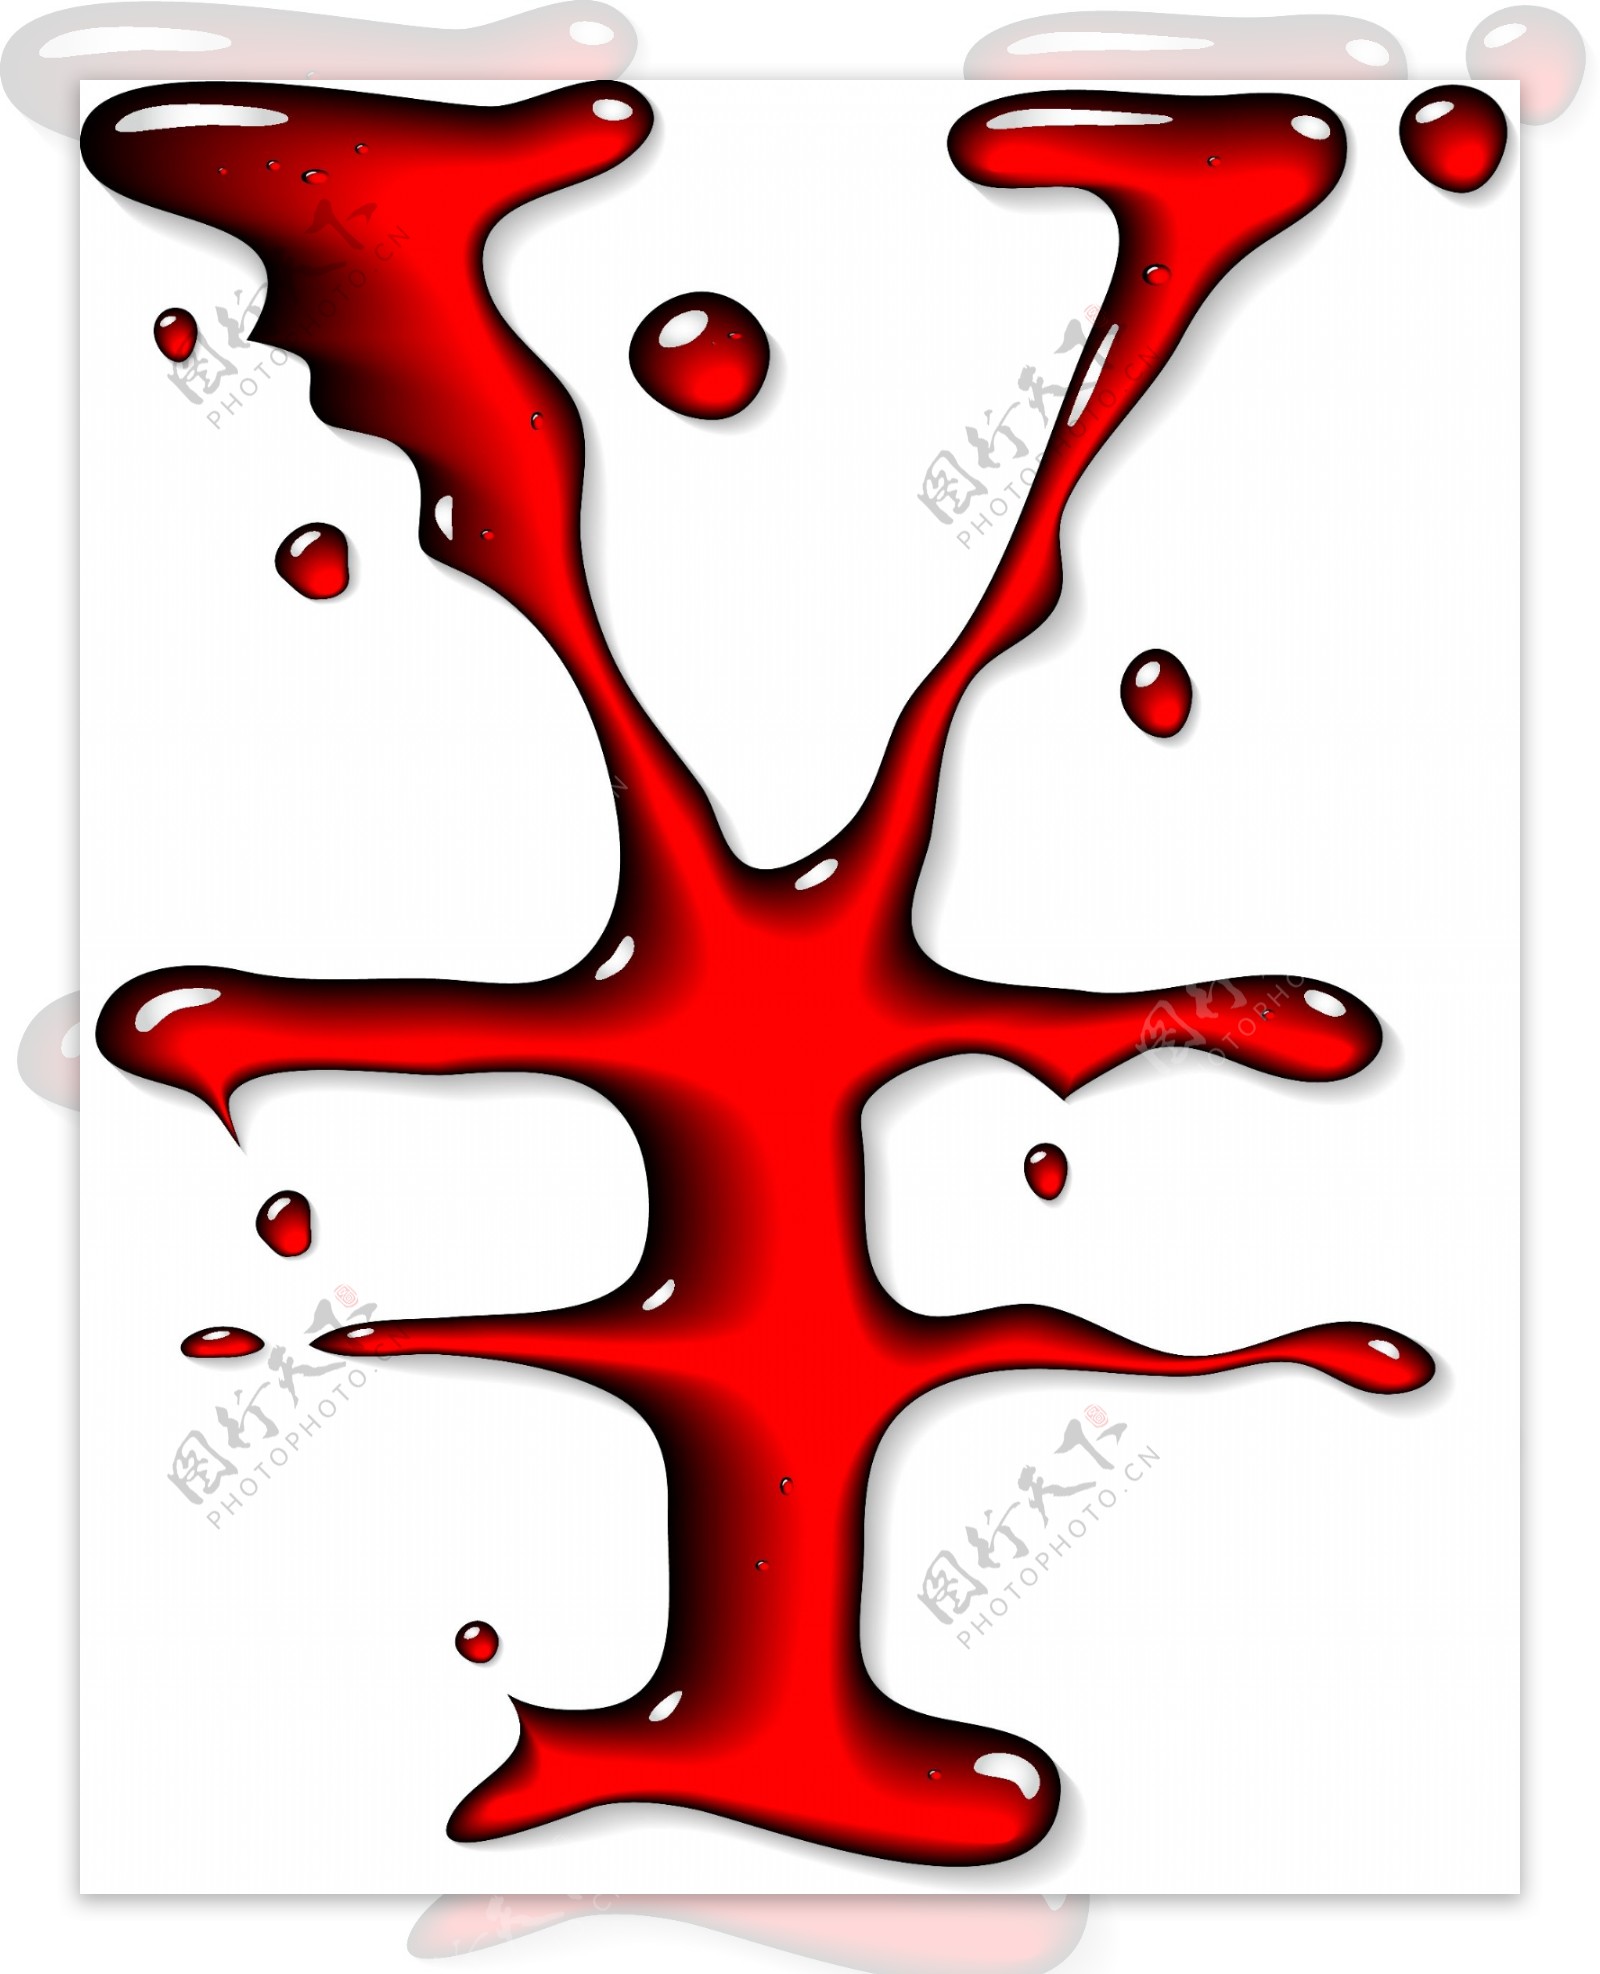 晶体纹理猩红色的符号矢量素材04